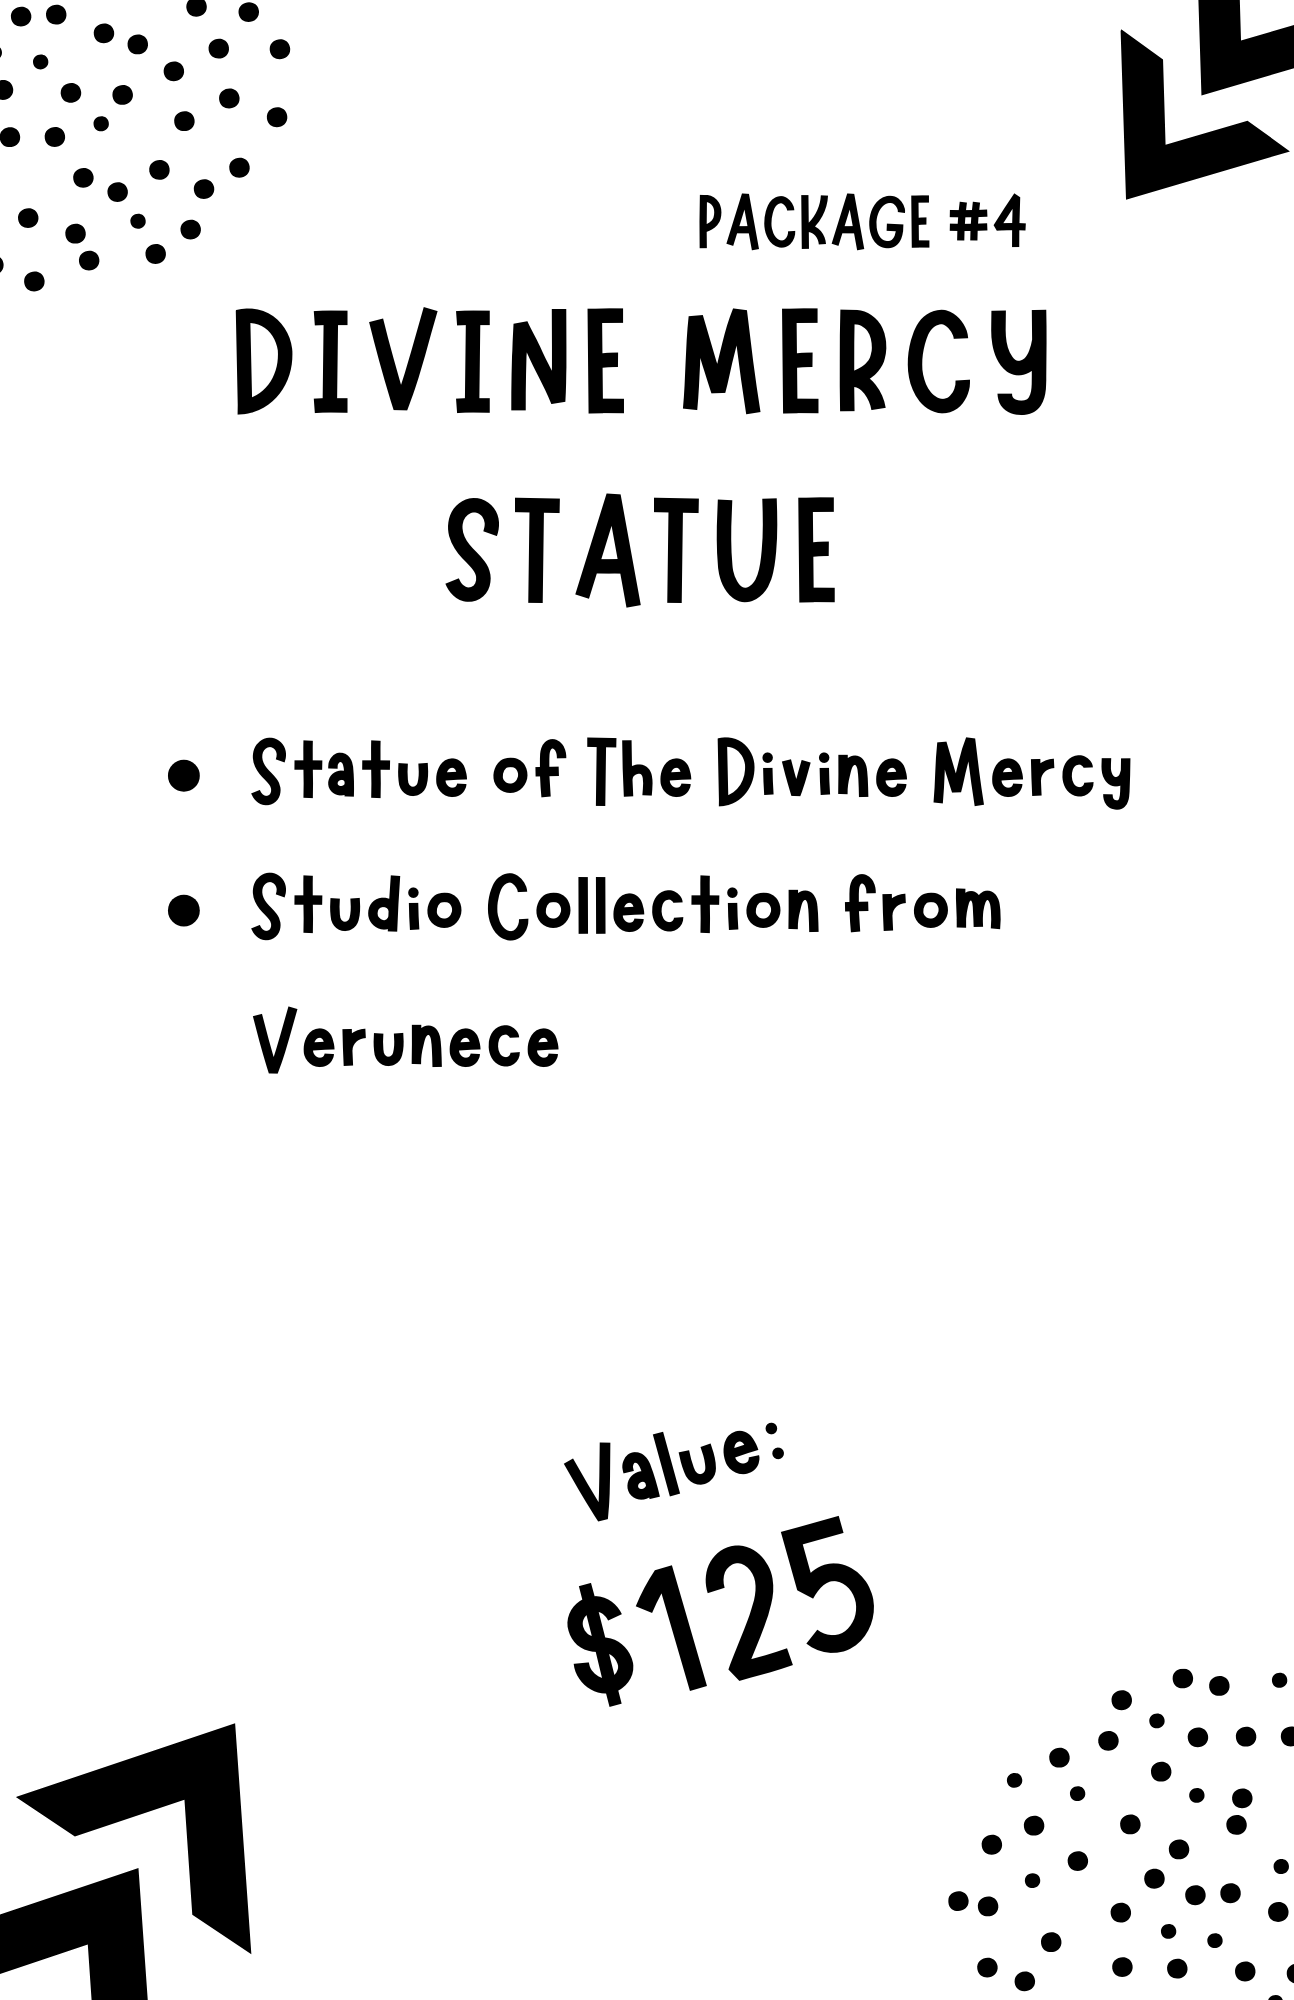 Auction Item #4: Divine Mercy 